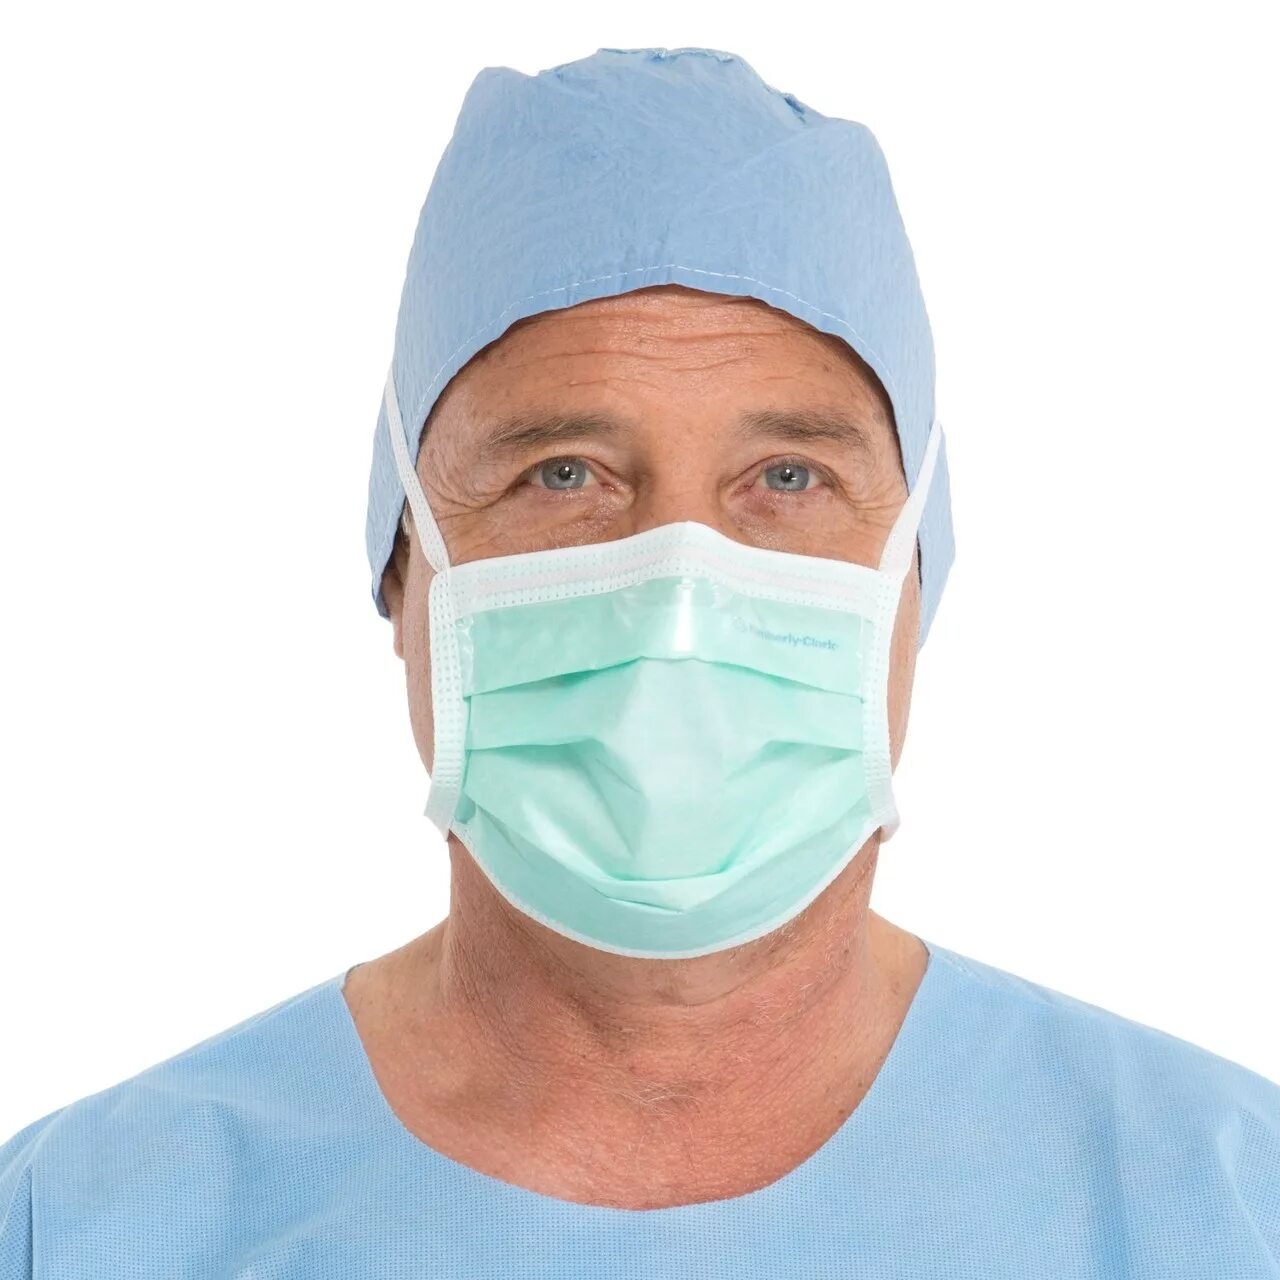 Медицинские маски Kimberly Clark. Хирургическая маска. Хирургическая маска для лица. Врач в маске.